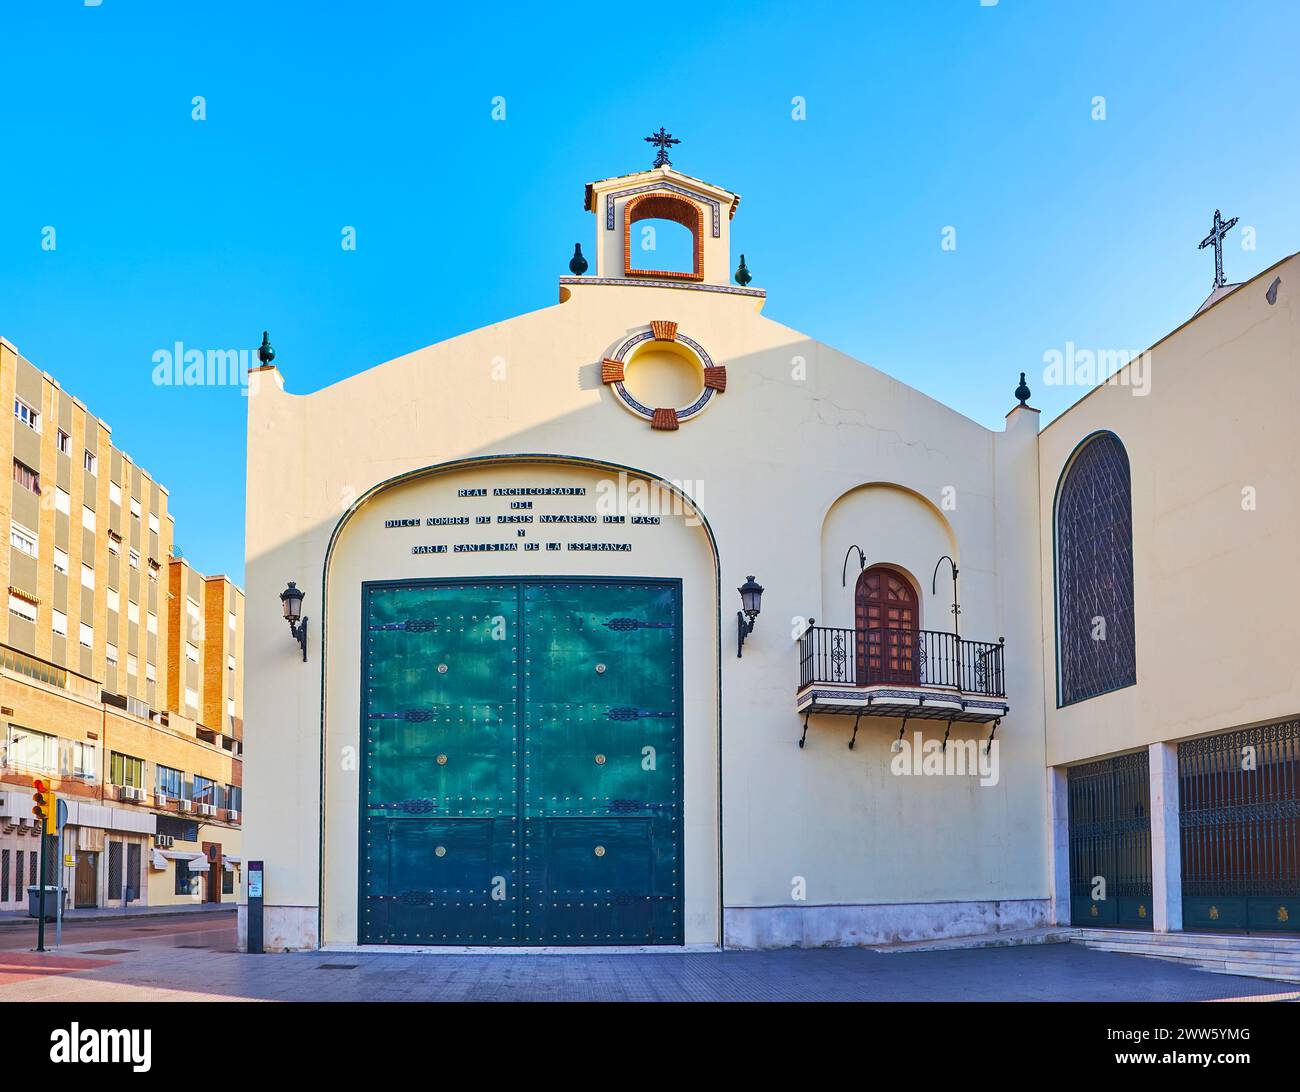 MALAGA, SPAIN - SEPT 28, 2019: The facade of Basilica de la Esperanza on Calle Hilera, Malaga, Spain Stock Photo